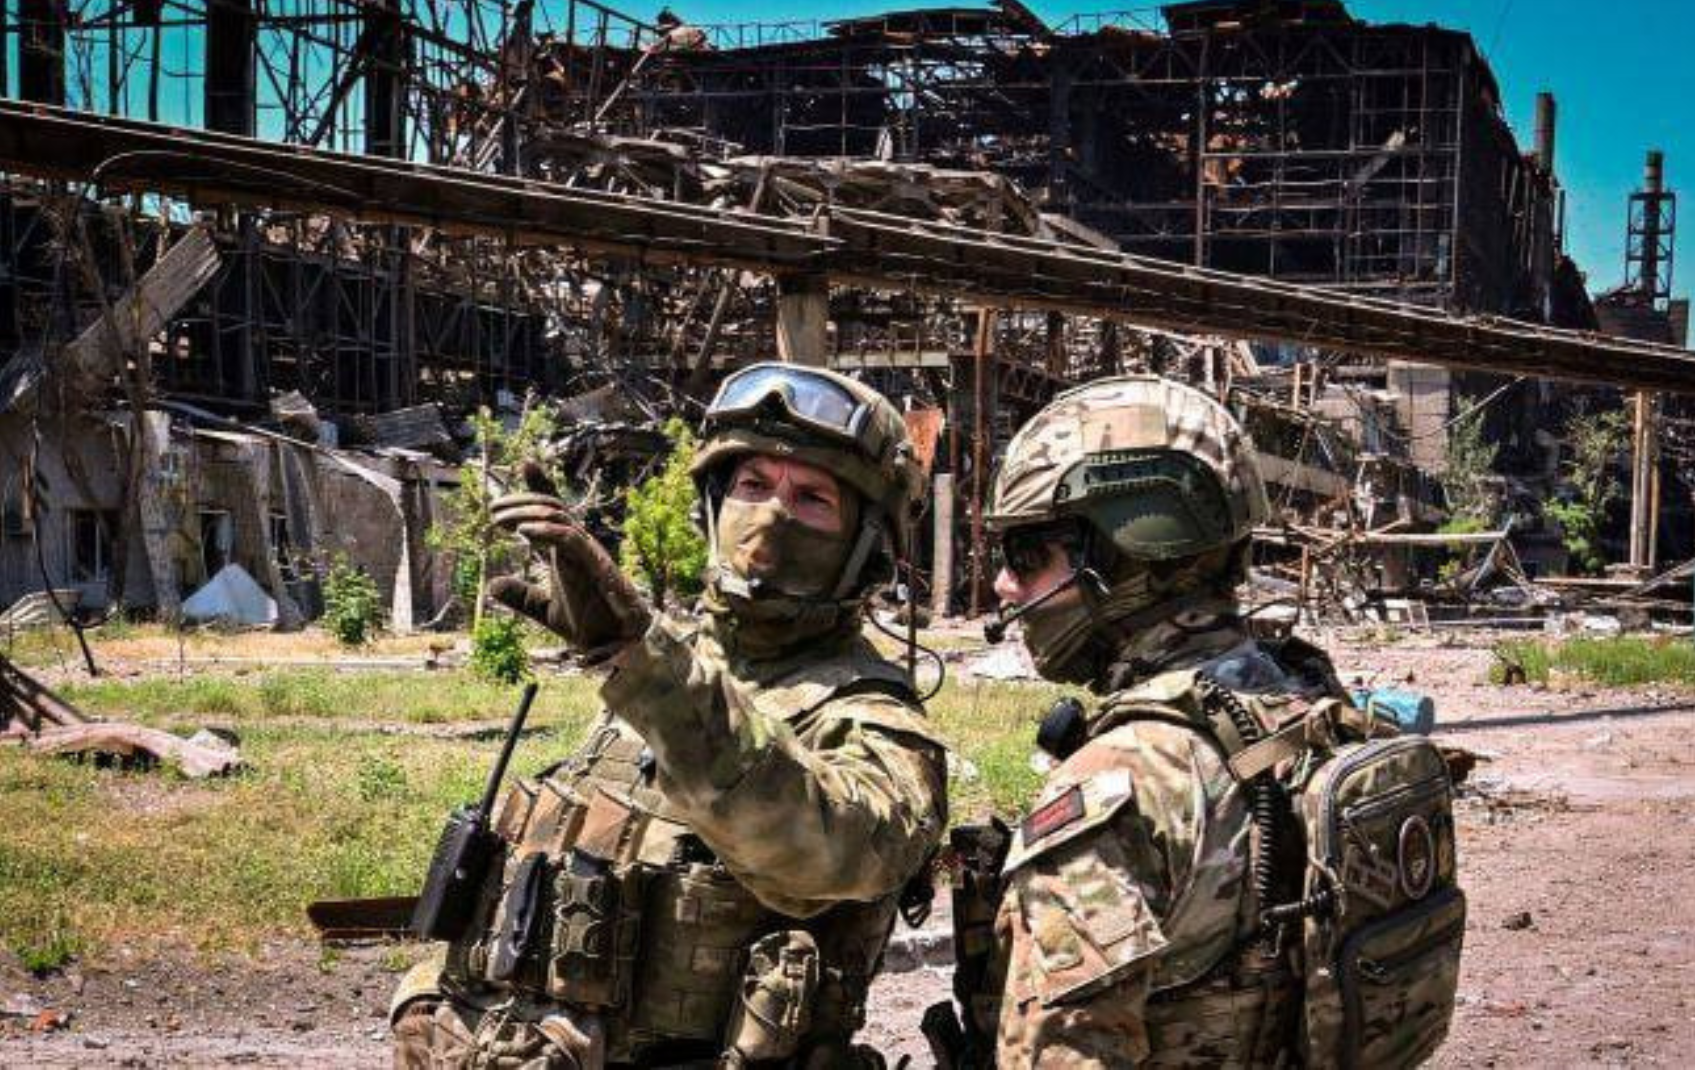 росія щодня втрачає 500 військових у війні проти України – The New York Times